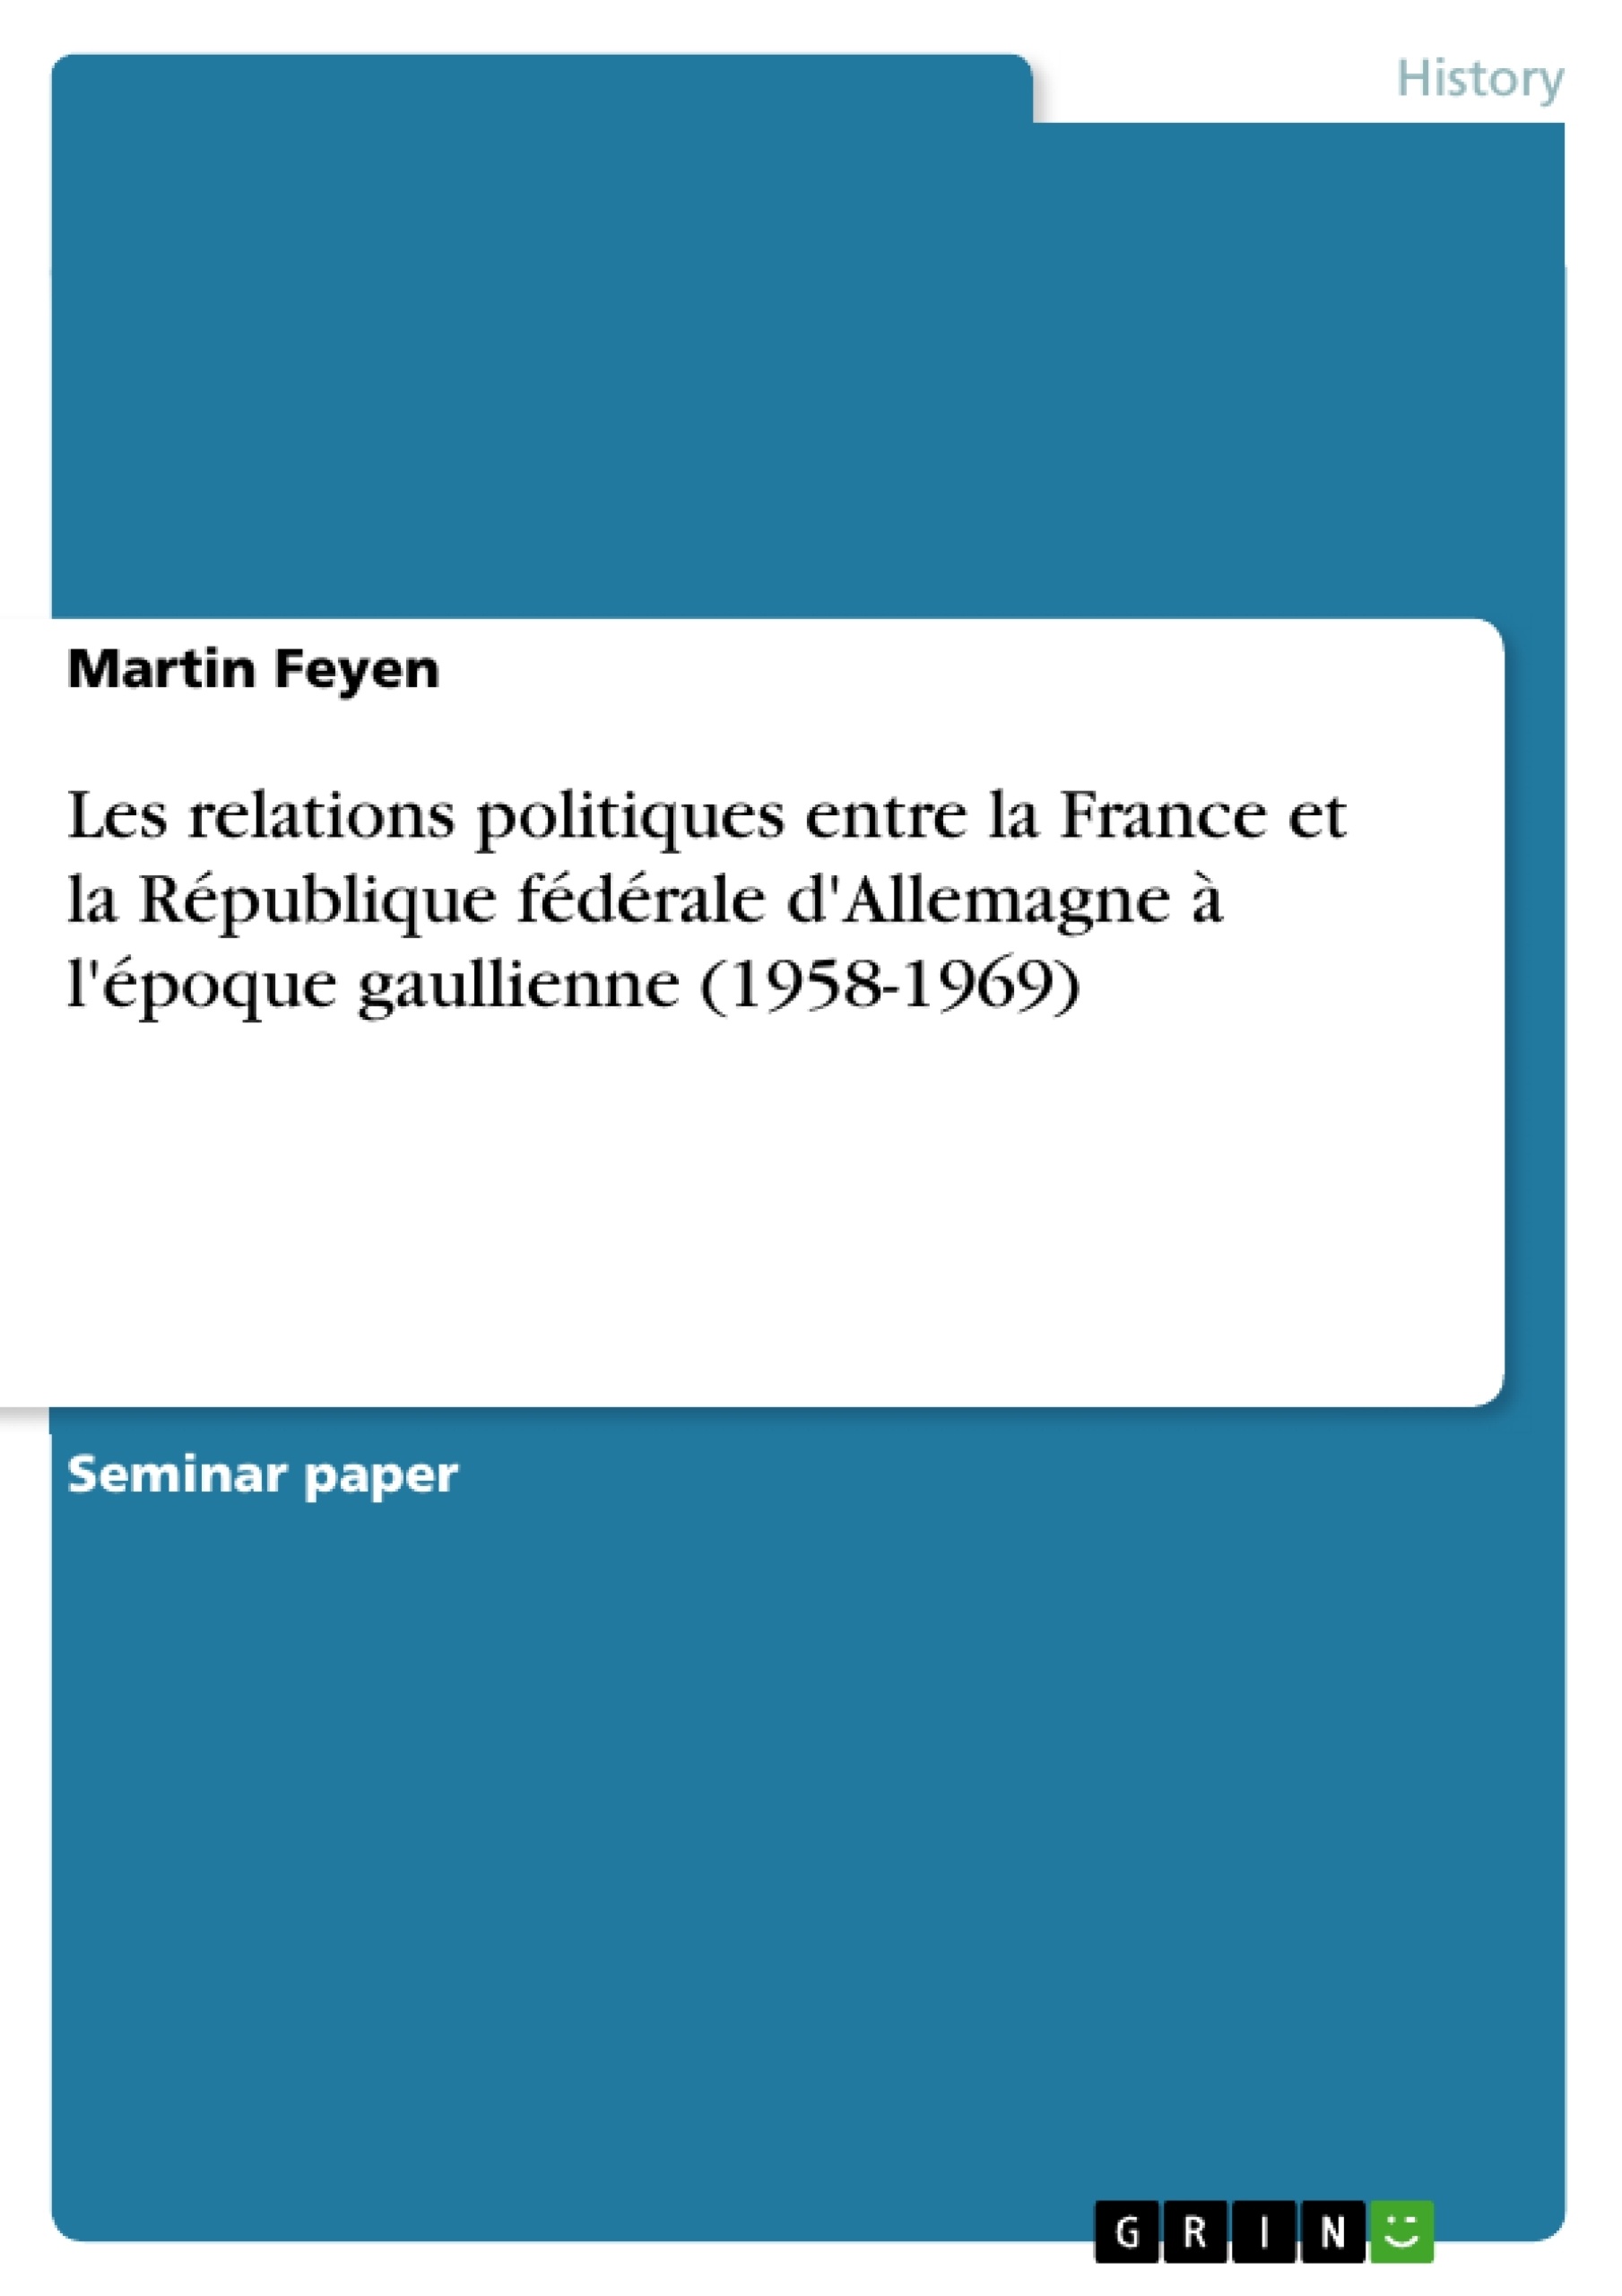 Título: Les relations politiques entre la France et la République fédérale d'Allemagne à l'époque gaullienne (1958-1969)